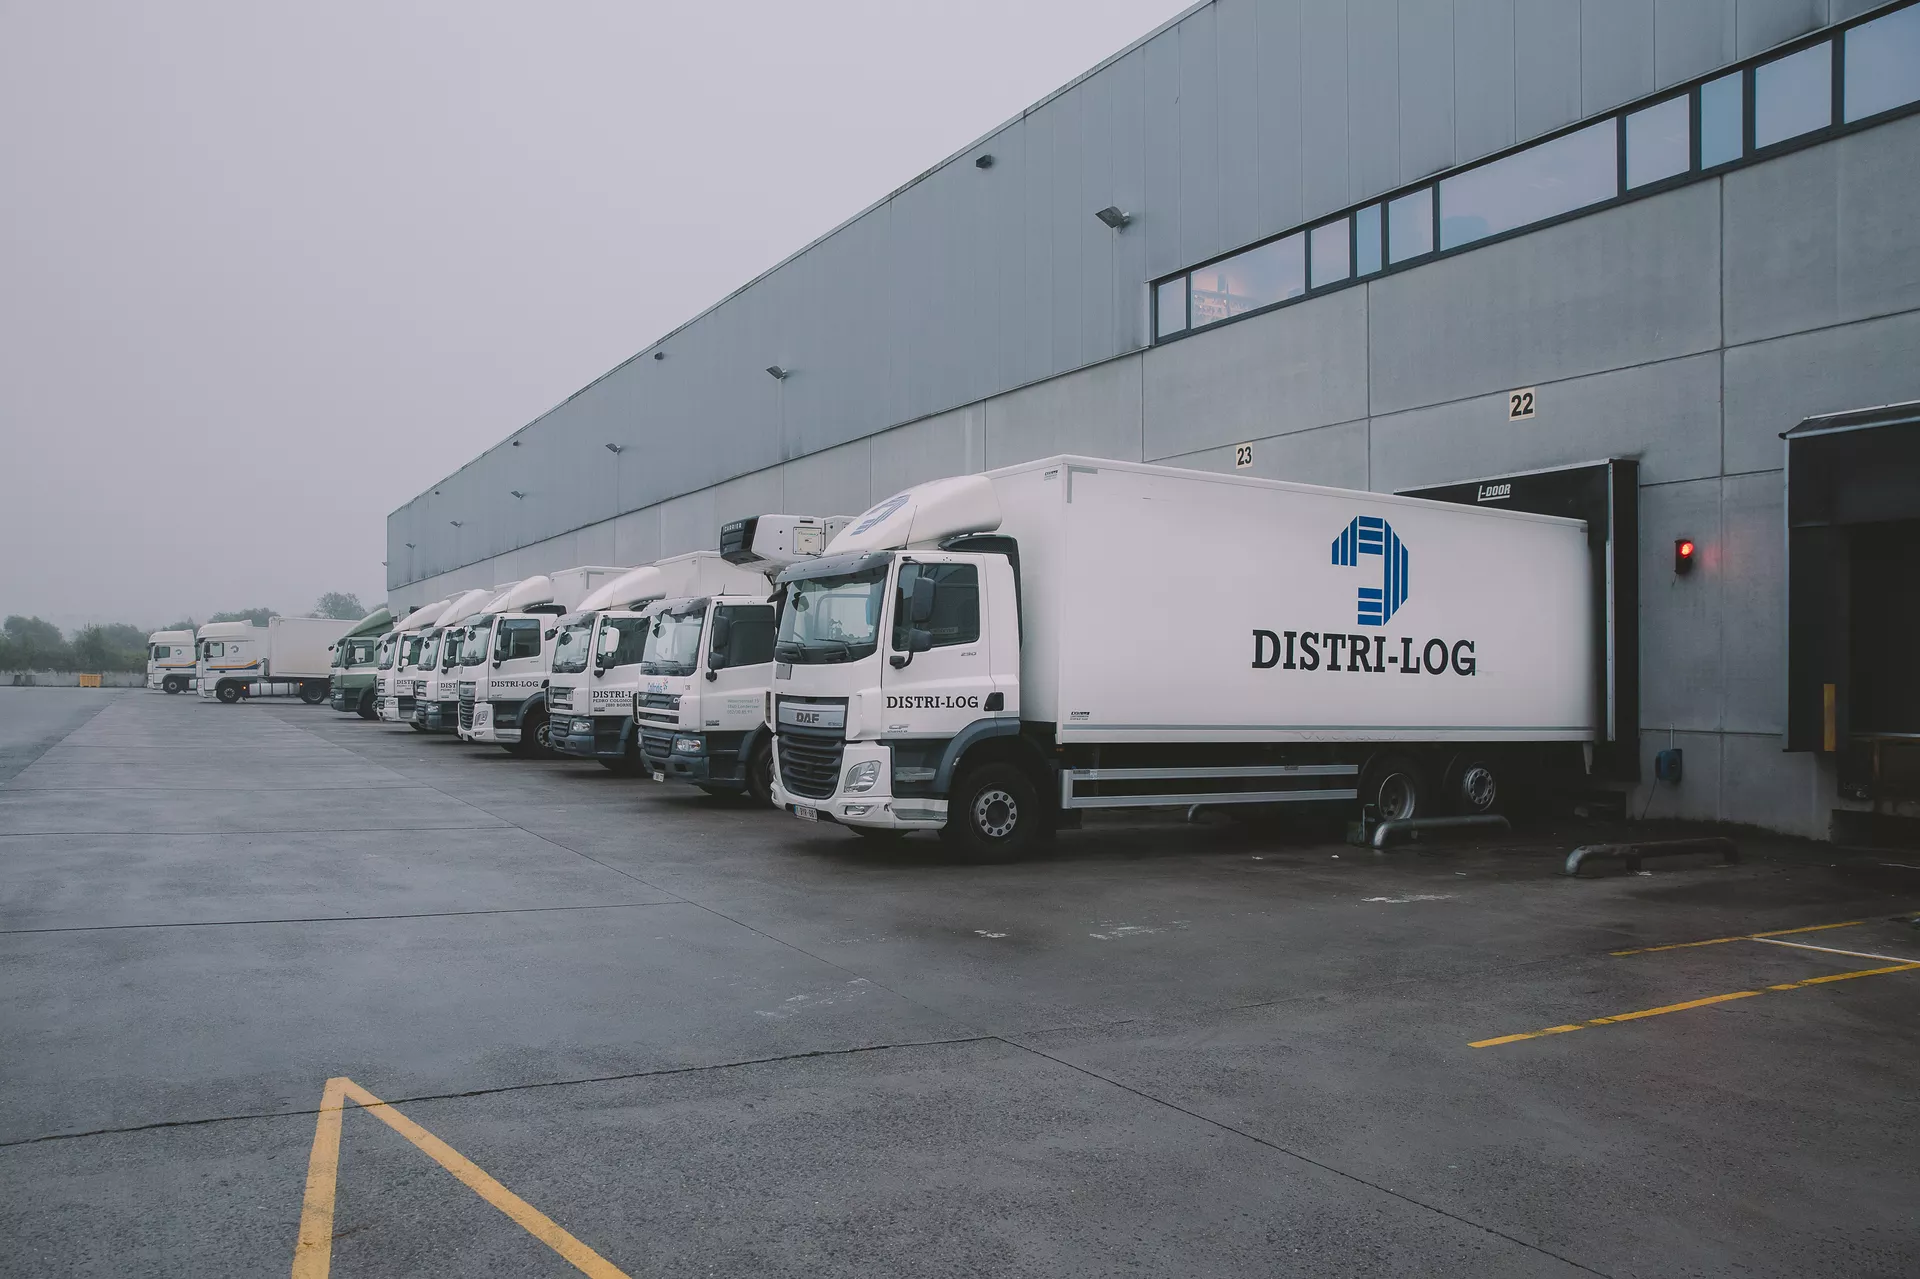 Distrilog Group Transport